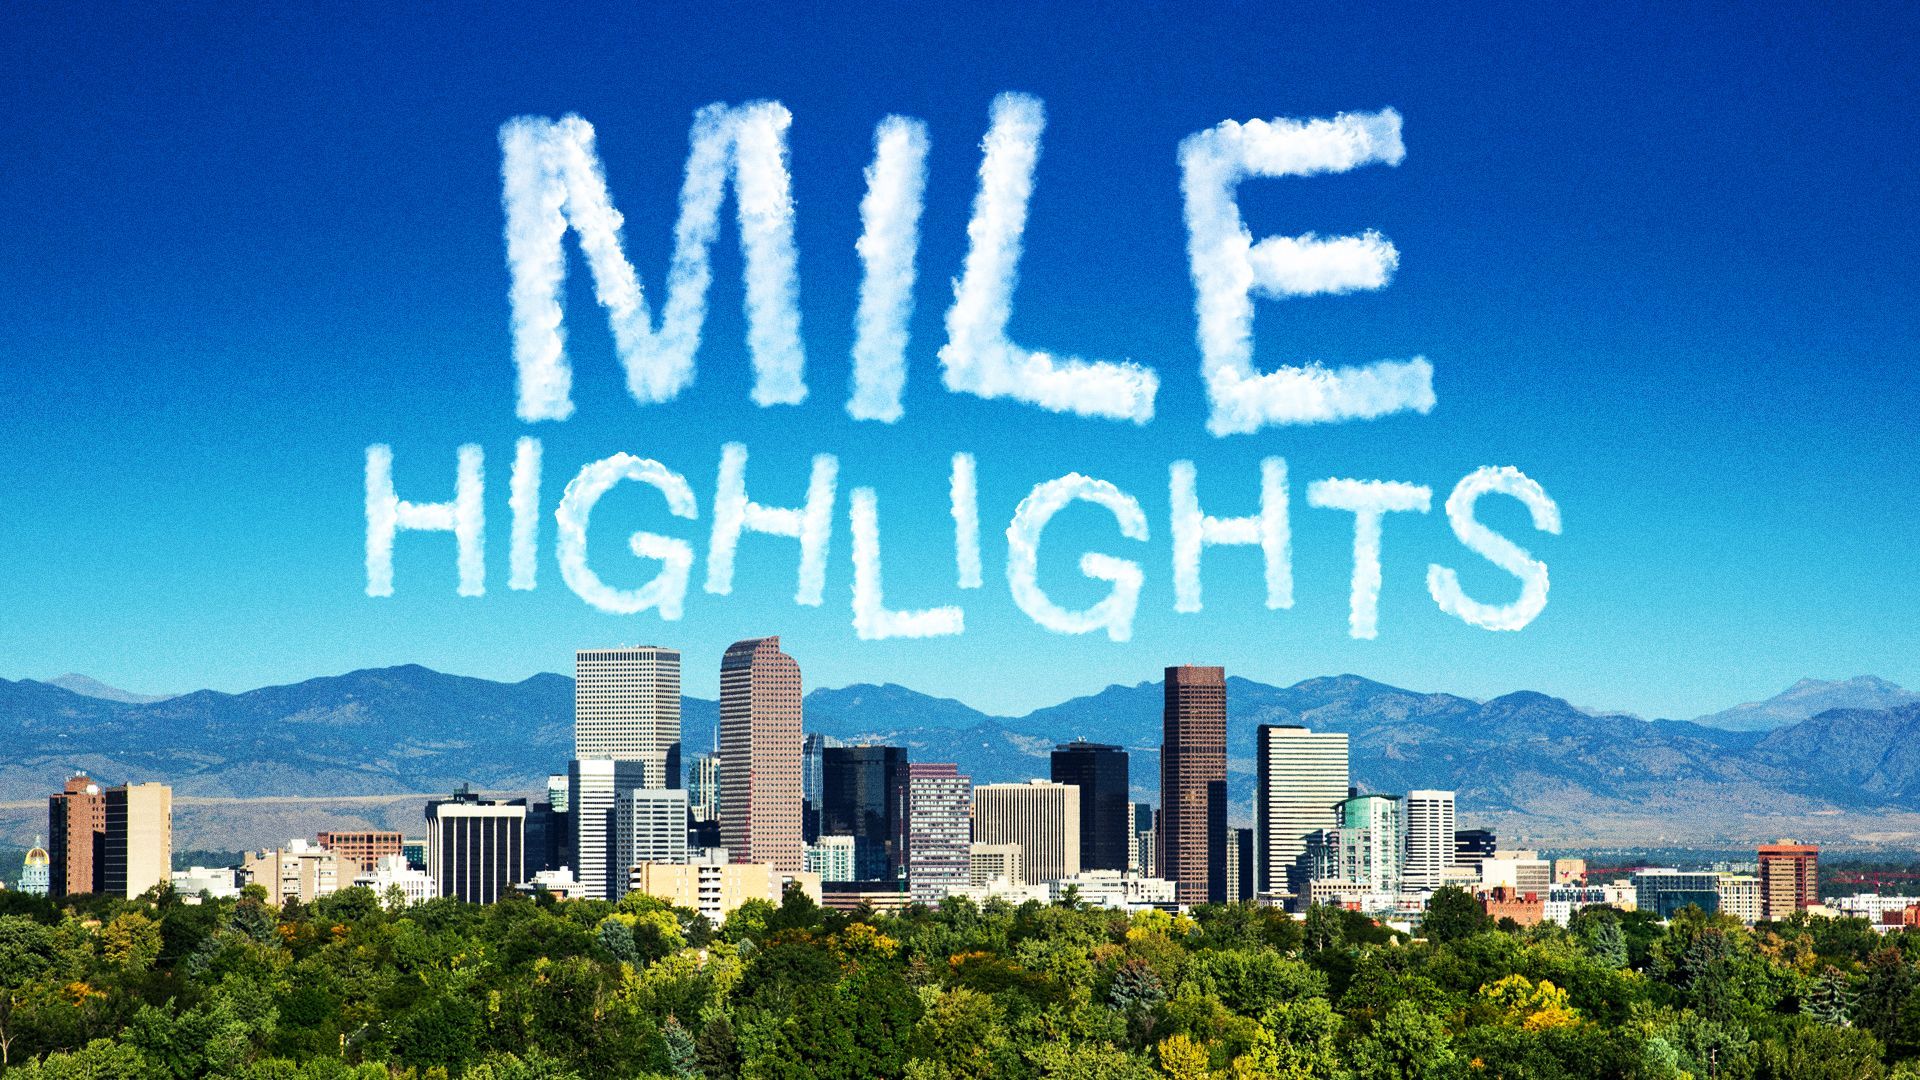 Illustration of clouds spelling "Mile Highlights" above Denver. 